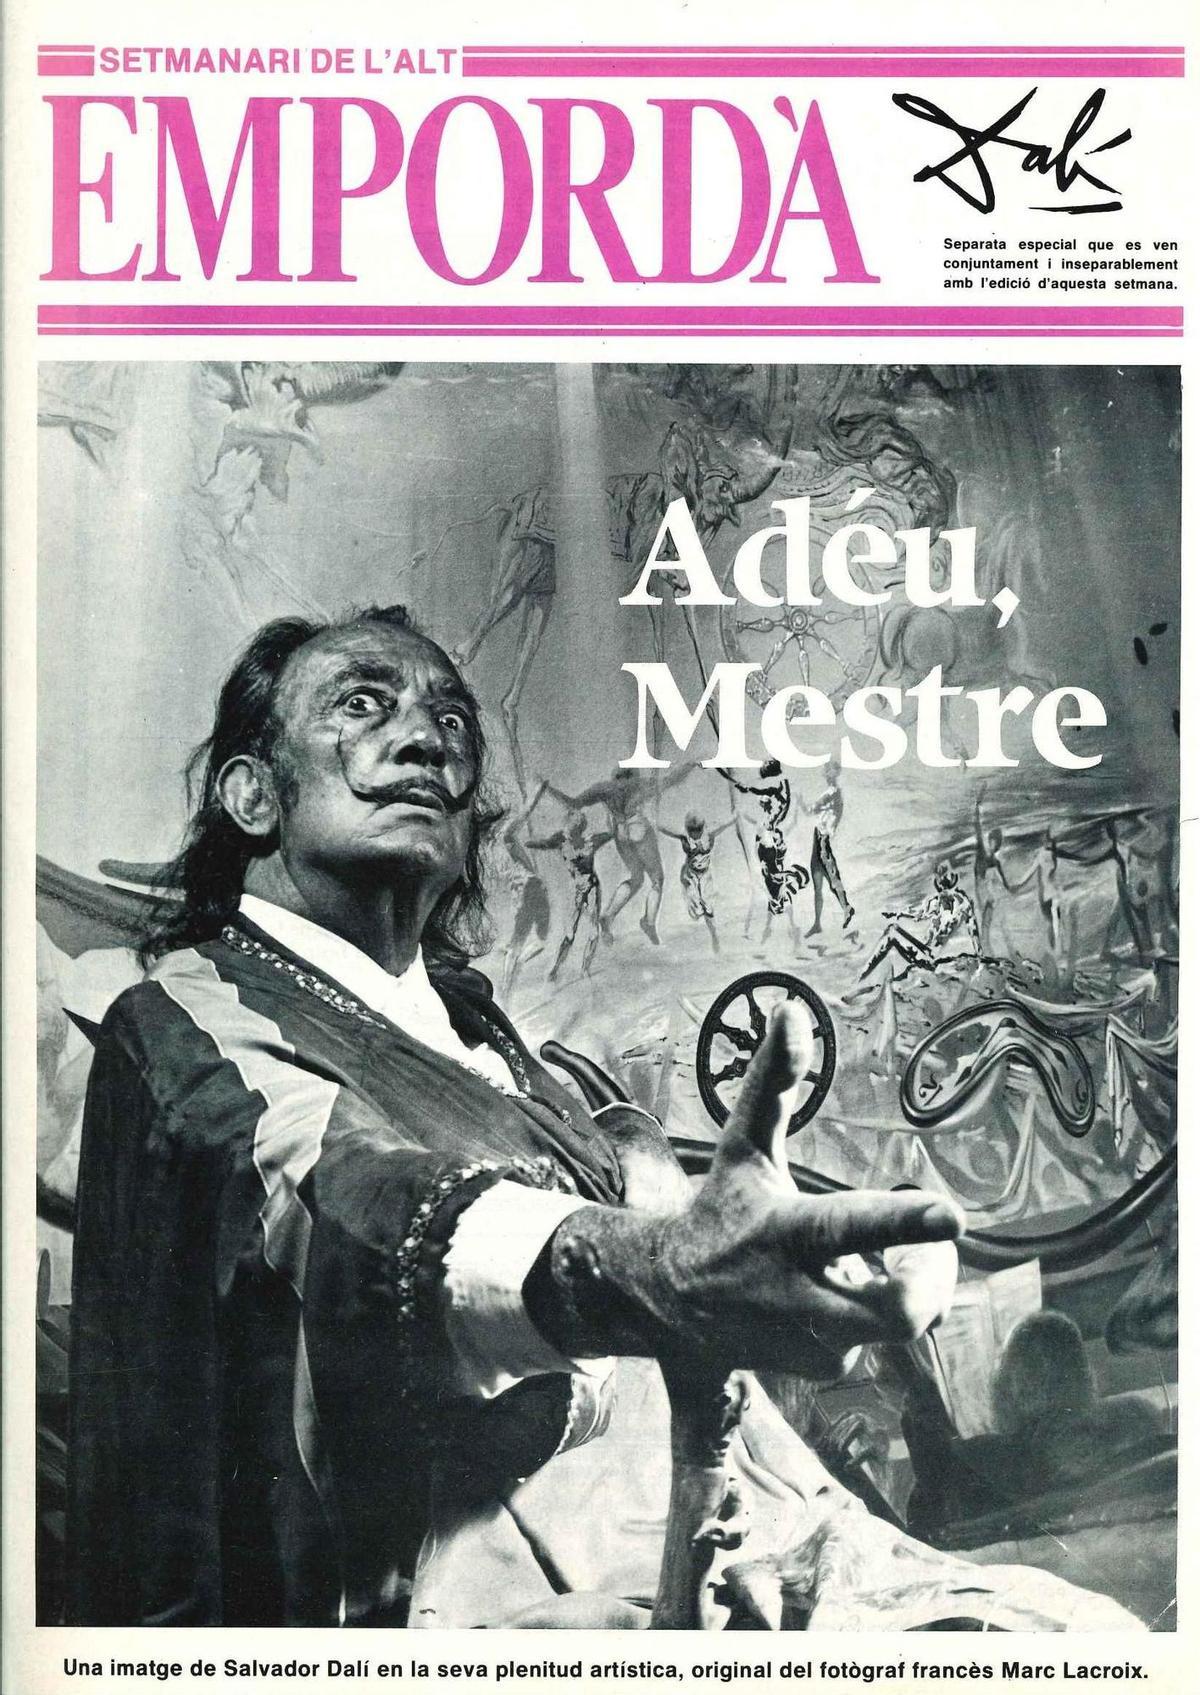 La portada de l'edició especial de l'Empordà dedicada al comiat de Dalí.